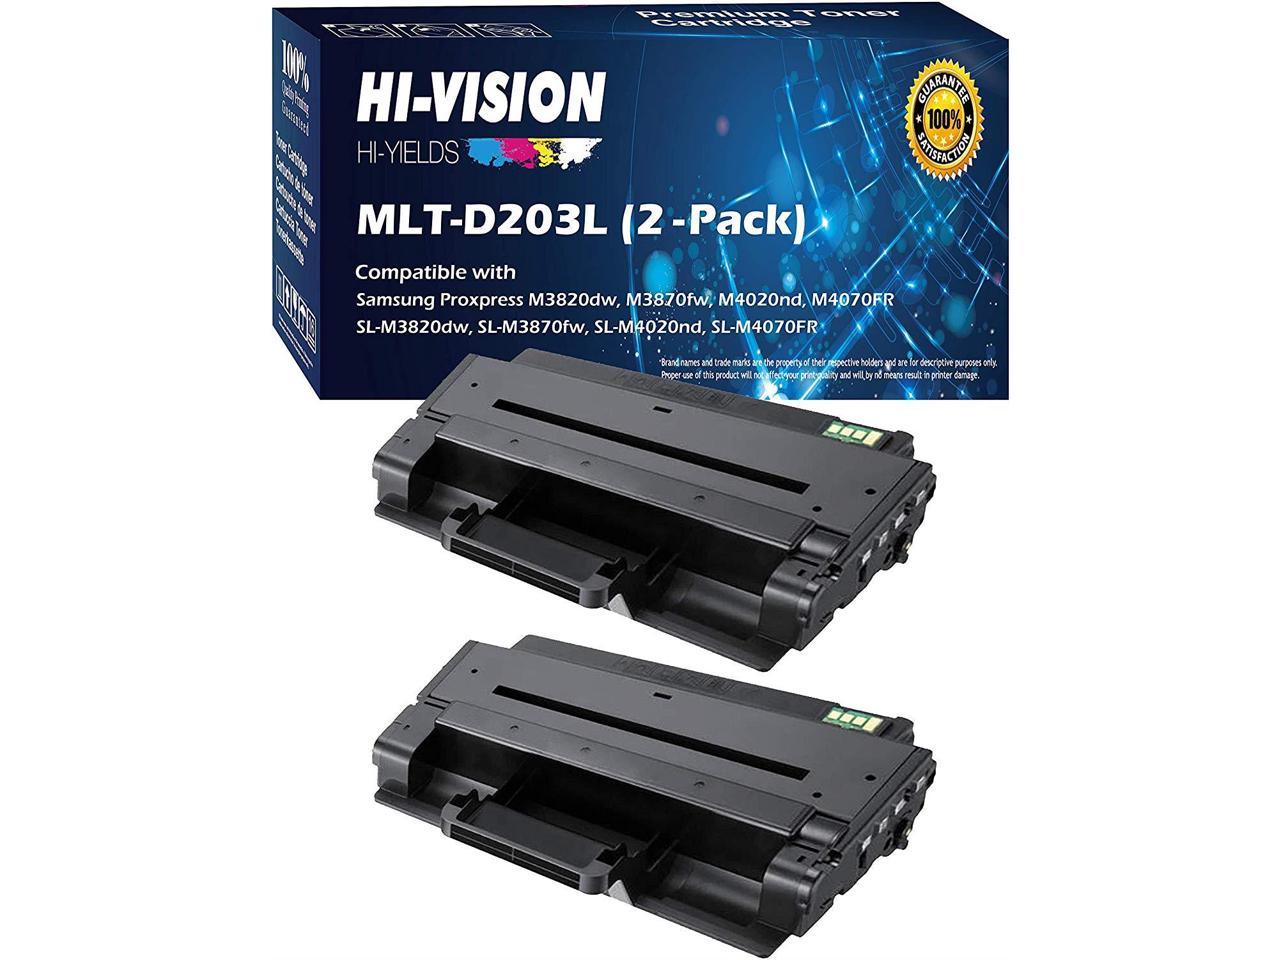 Torrent katje zakdoek HI-Vision Compatible MLT-D203L / XAA High Yield Laser Toner Cartridge for  Samsung ProXpress M3320ND, M3370FD, SL-M3820DW, M3870FW, M4020ND, M4070FR  Printer (203L, Black 2 Pack) - Newegg.com